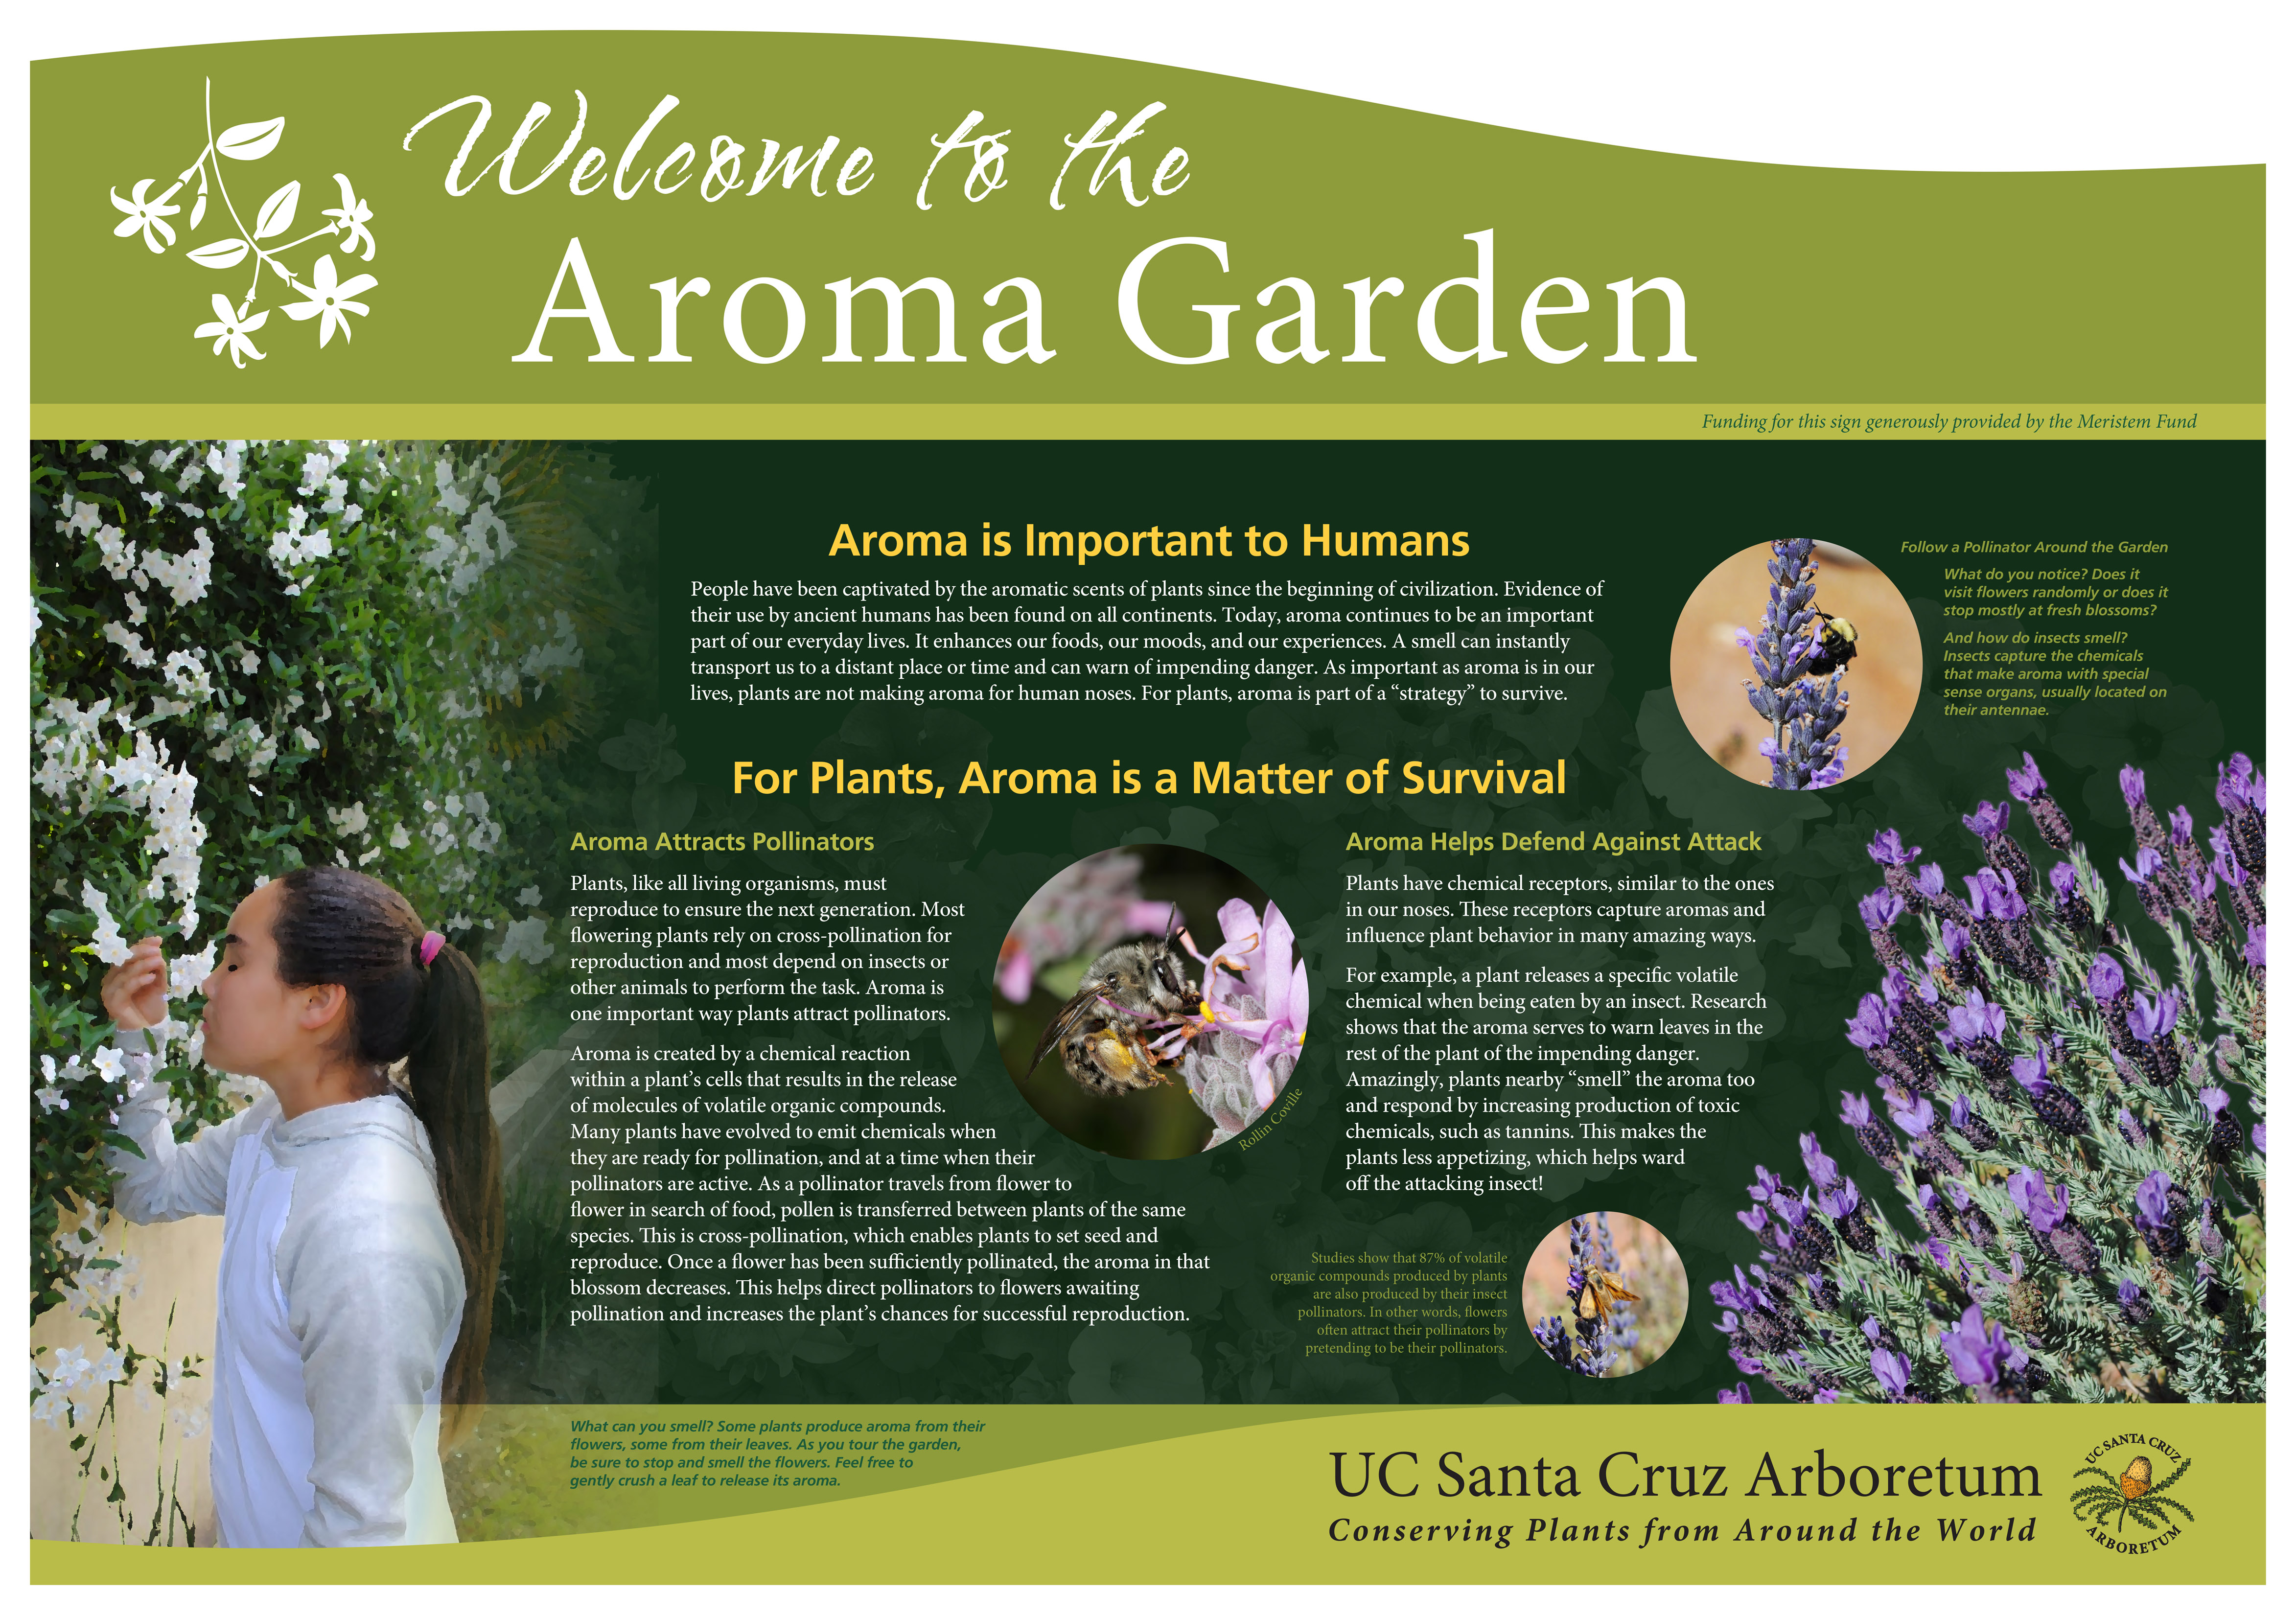 10-ucsc-arboretum_aroma-garden-sign.jpg